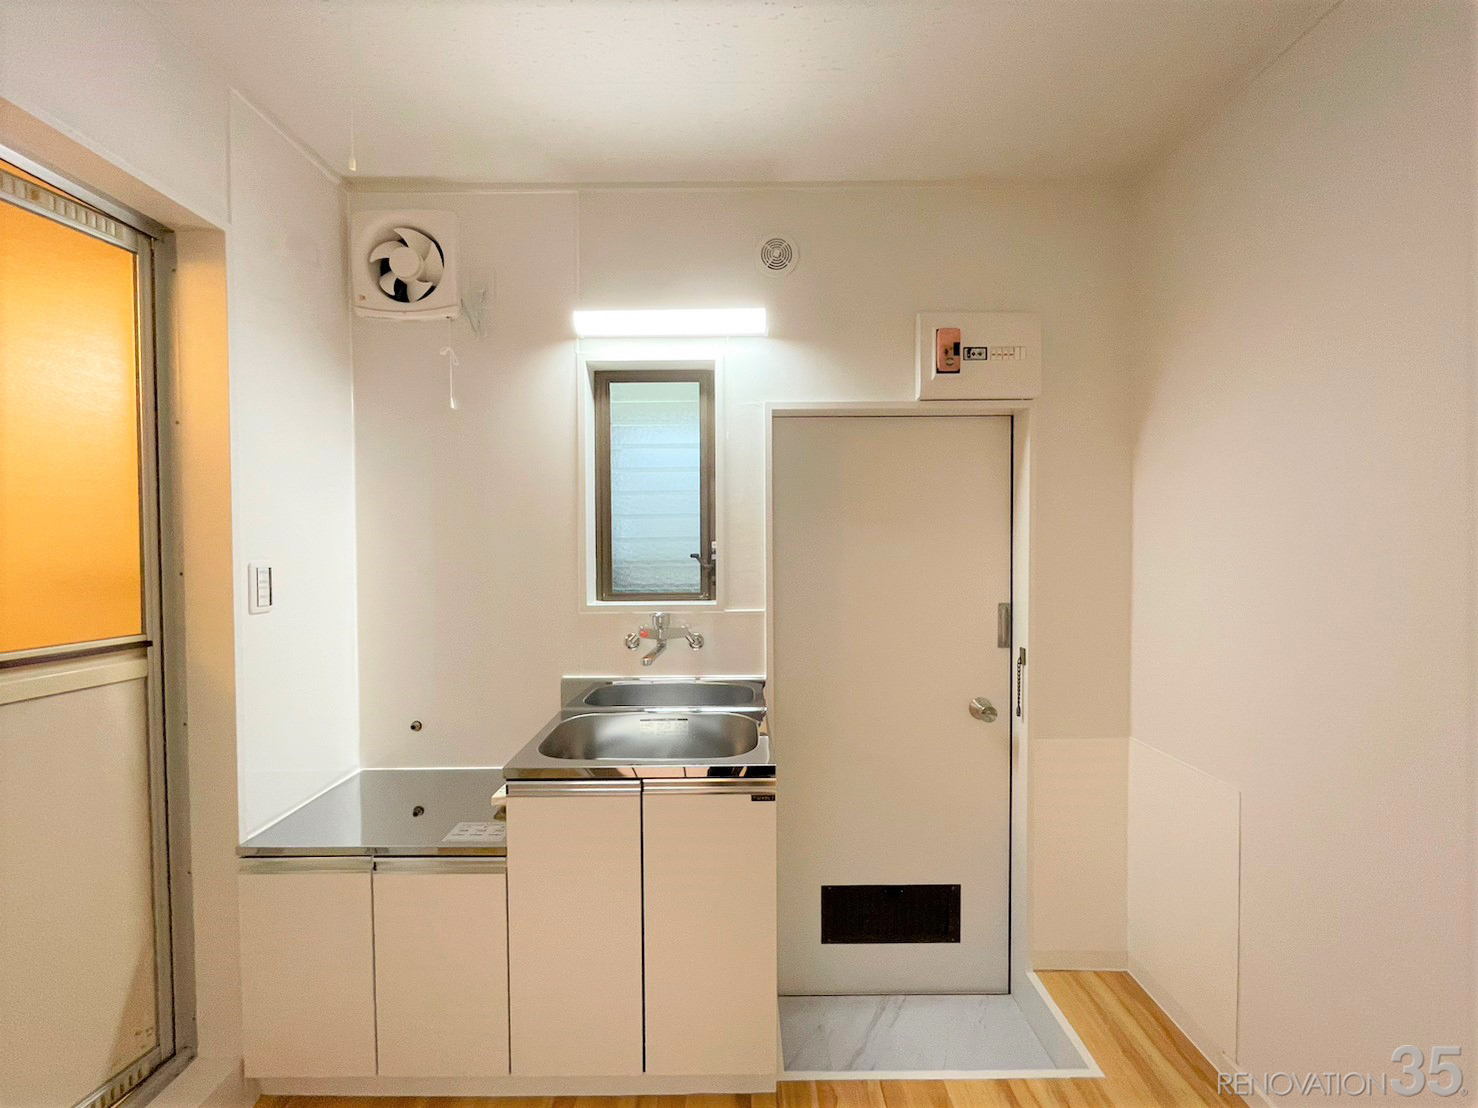 明るいお部屋で快適な生活、1Kの空室対策リノベーション東京都世田谷区、AFTER3